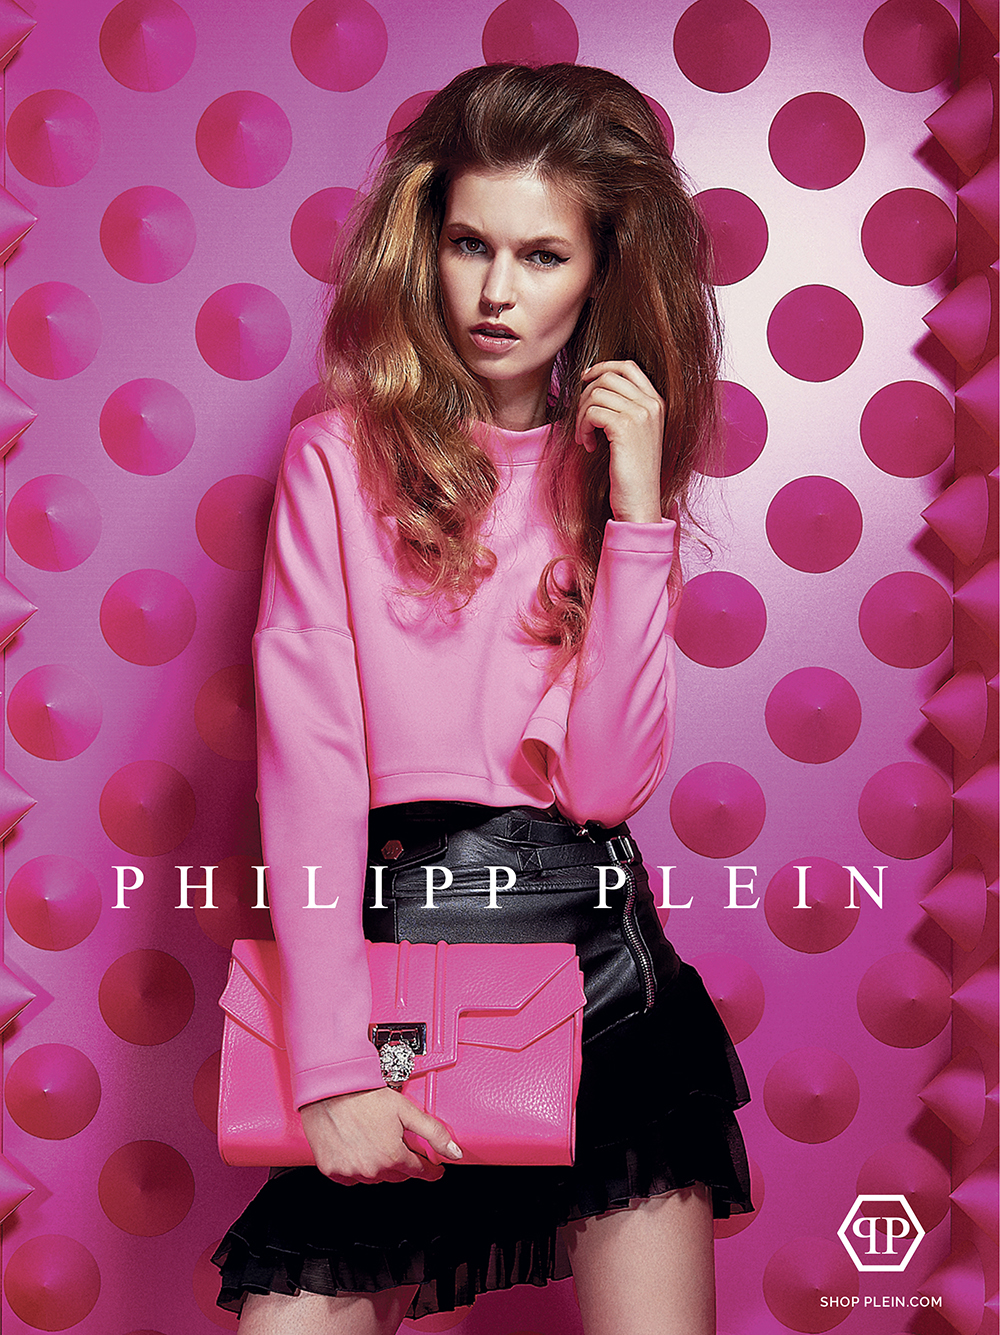 Philipp Plein Cruise collection 2015 Campaign (4)